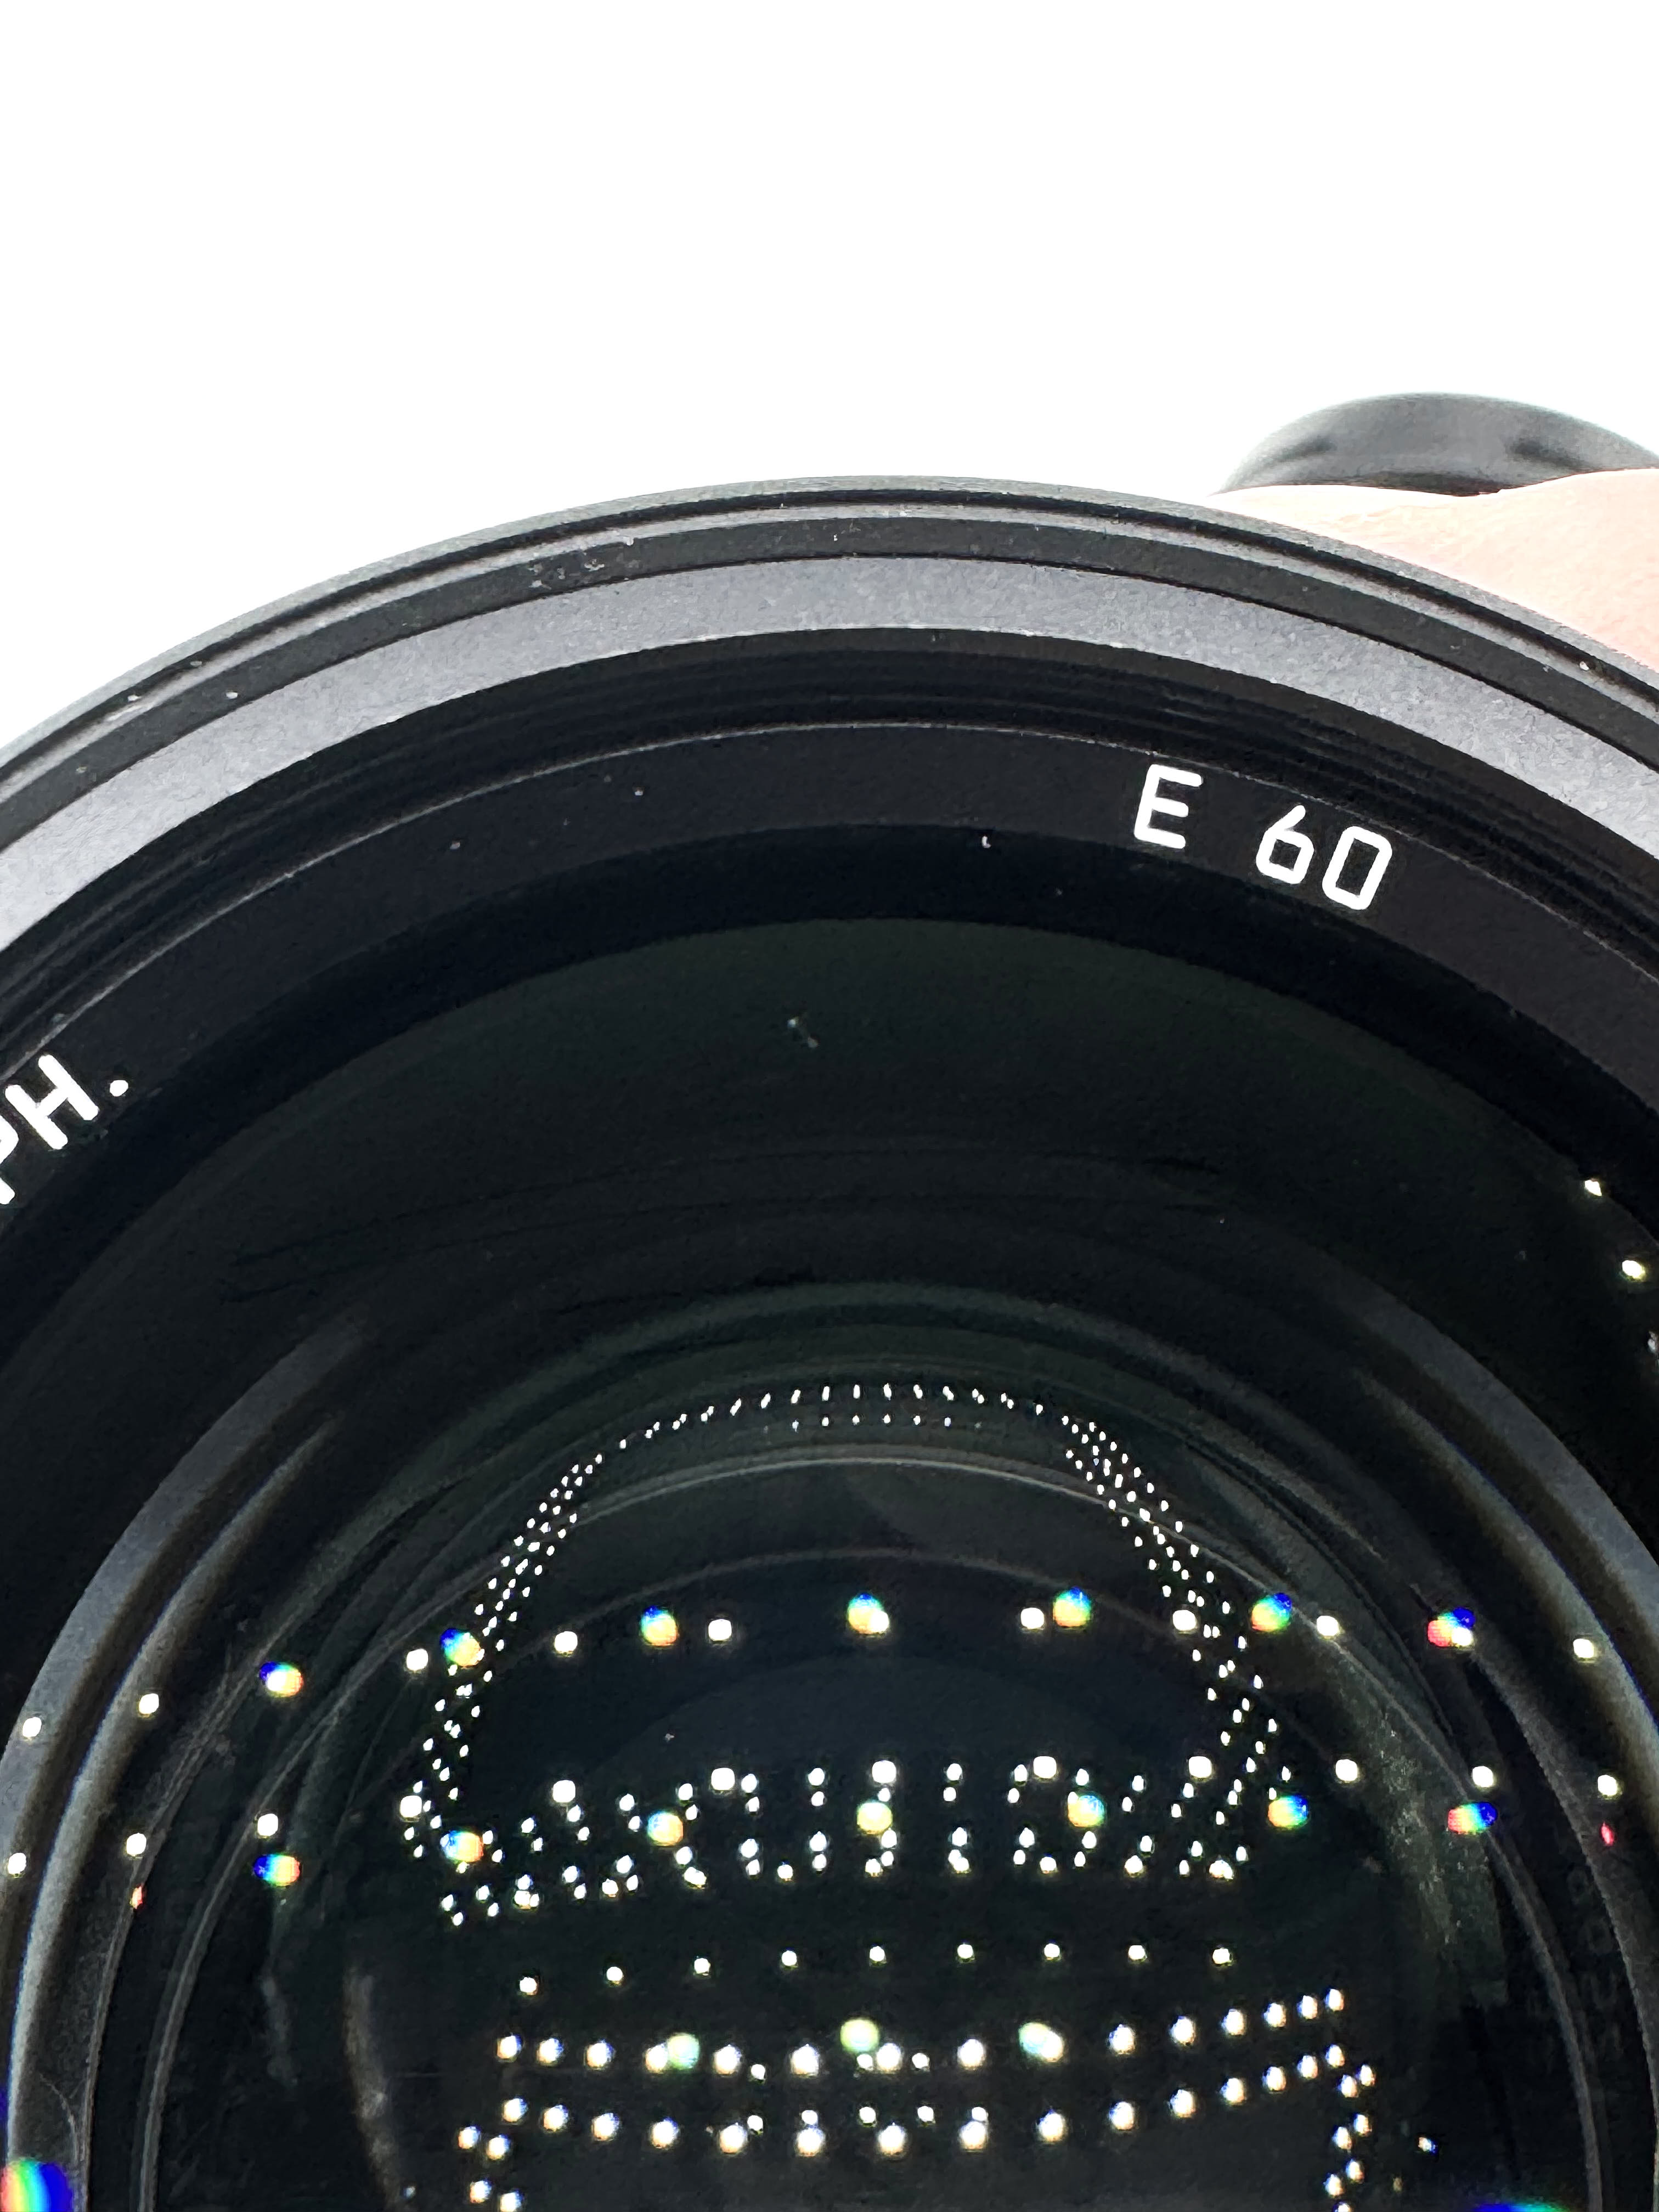 Leica Noctilux-M 50mm f/0,95 11602